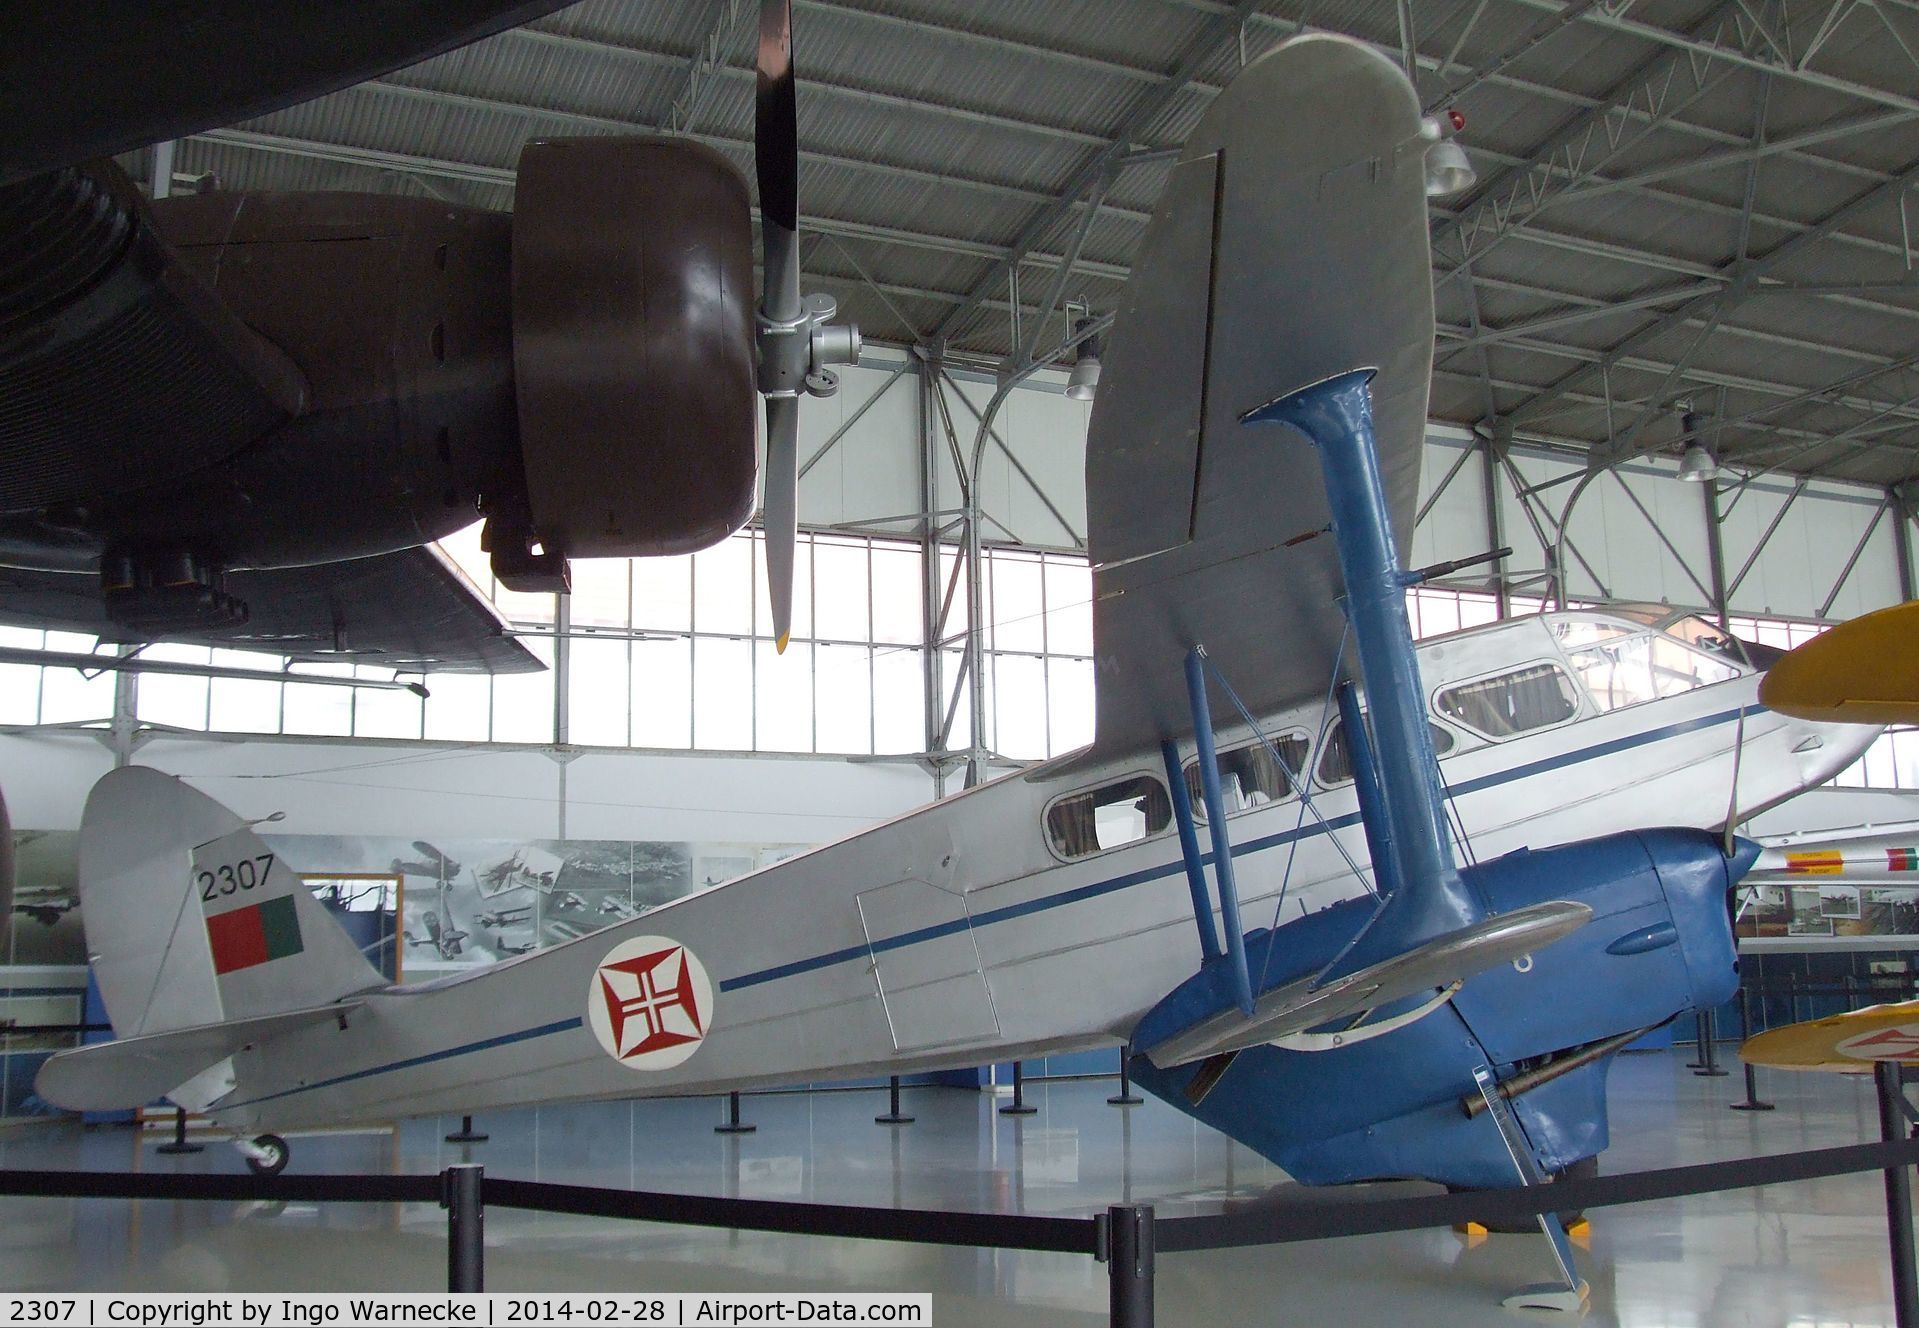 2307, De Havilland DH-89A Dominie/Dragon Rapide C/N 6899, De Havilland D.H.89A Dominie at the Museu do Ar, Sintra